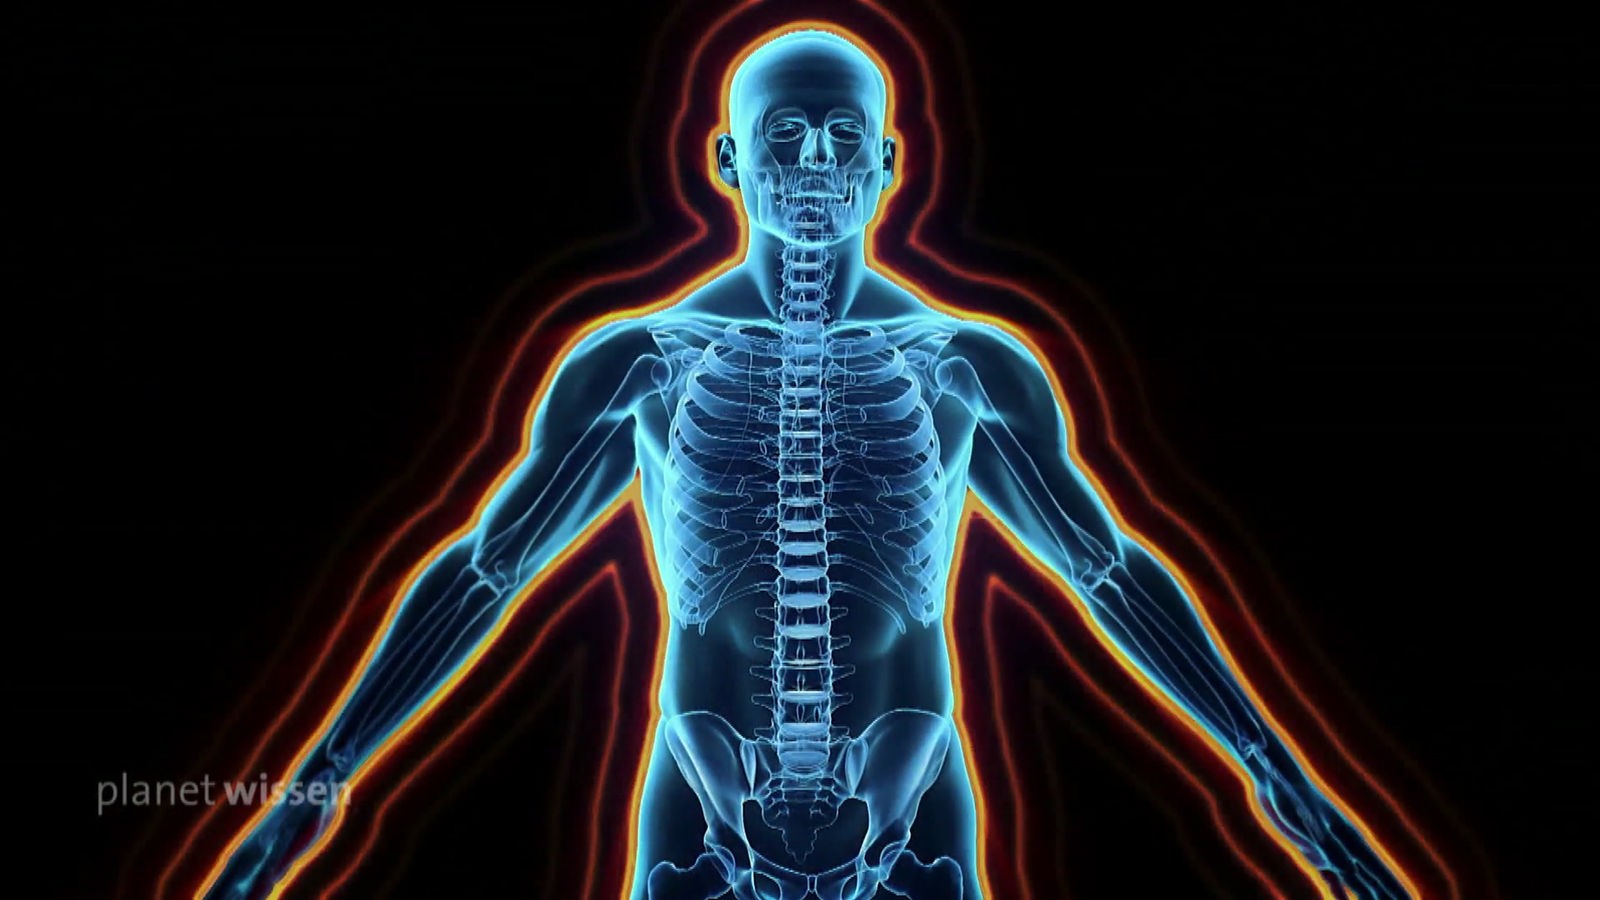 Grafik: Transparenter Oberkörper eines Menschen, in dem die Knochen zu erkennen sind.